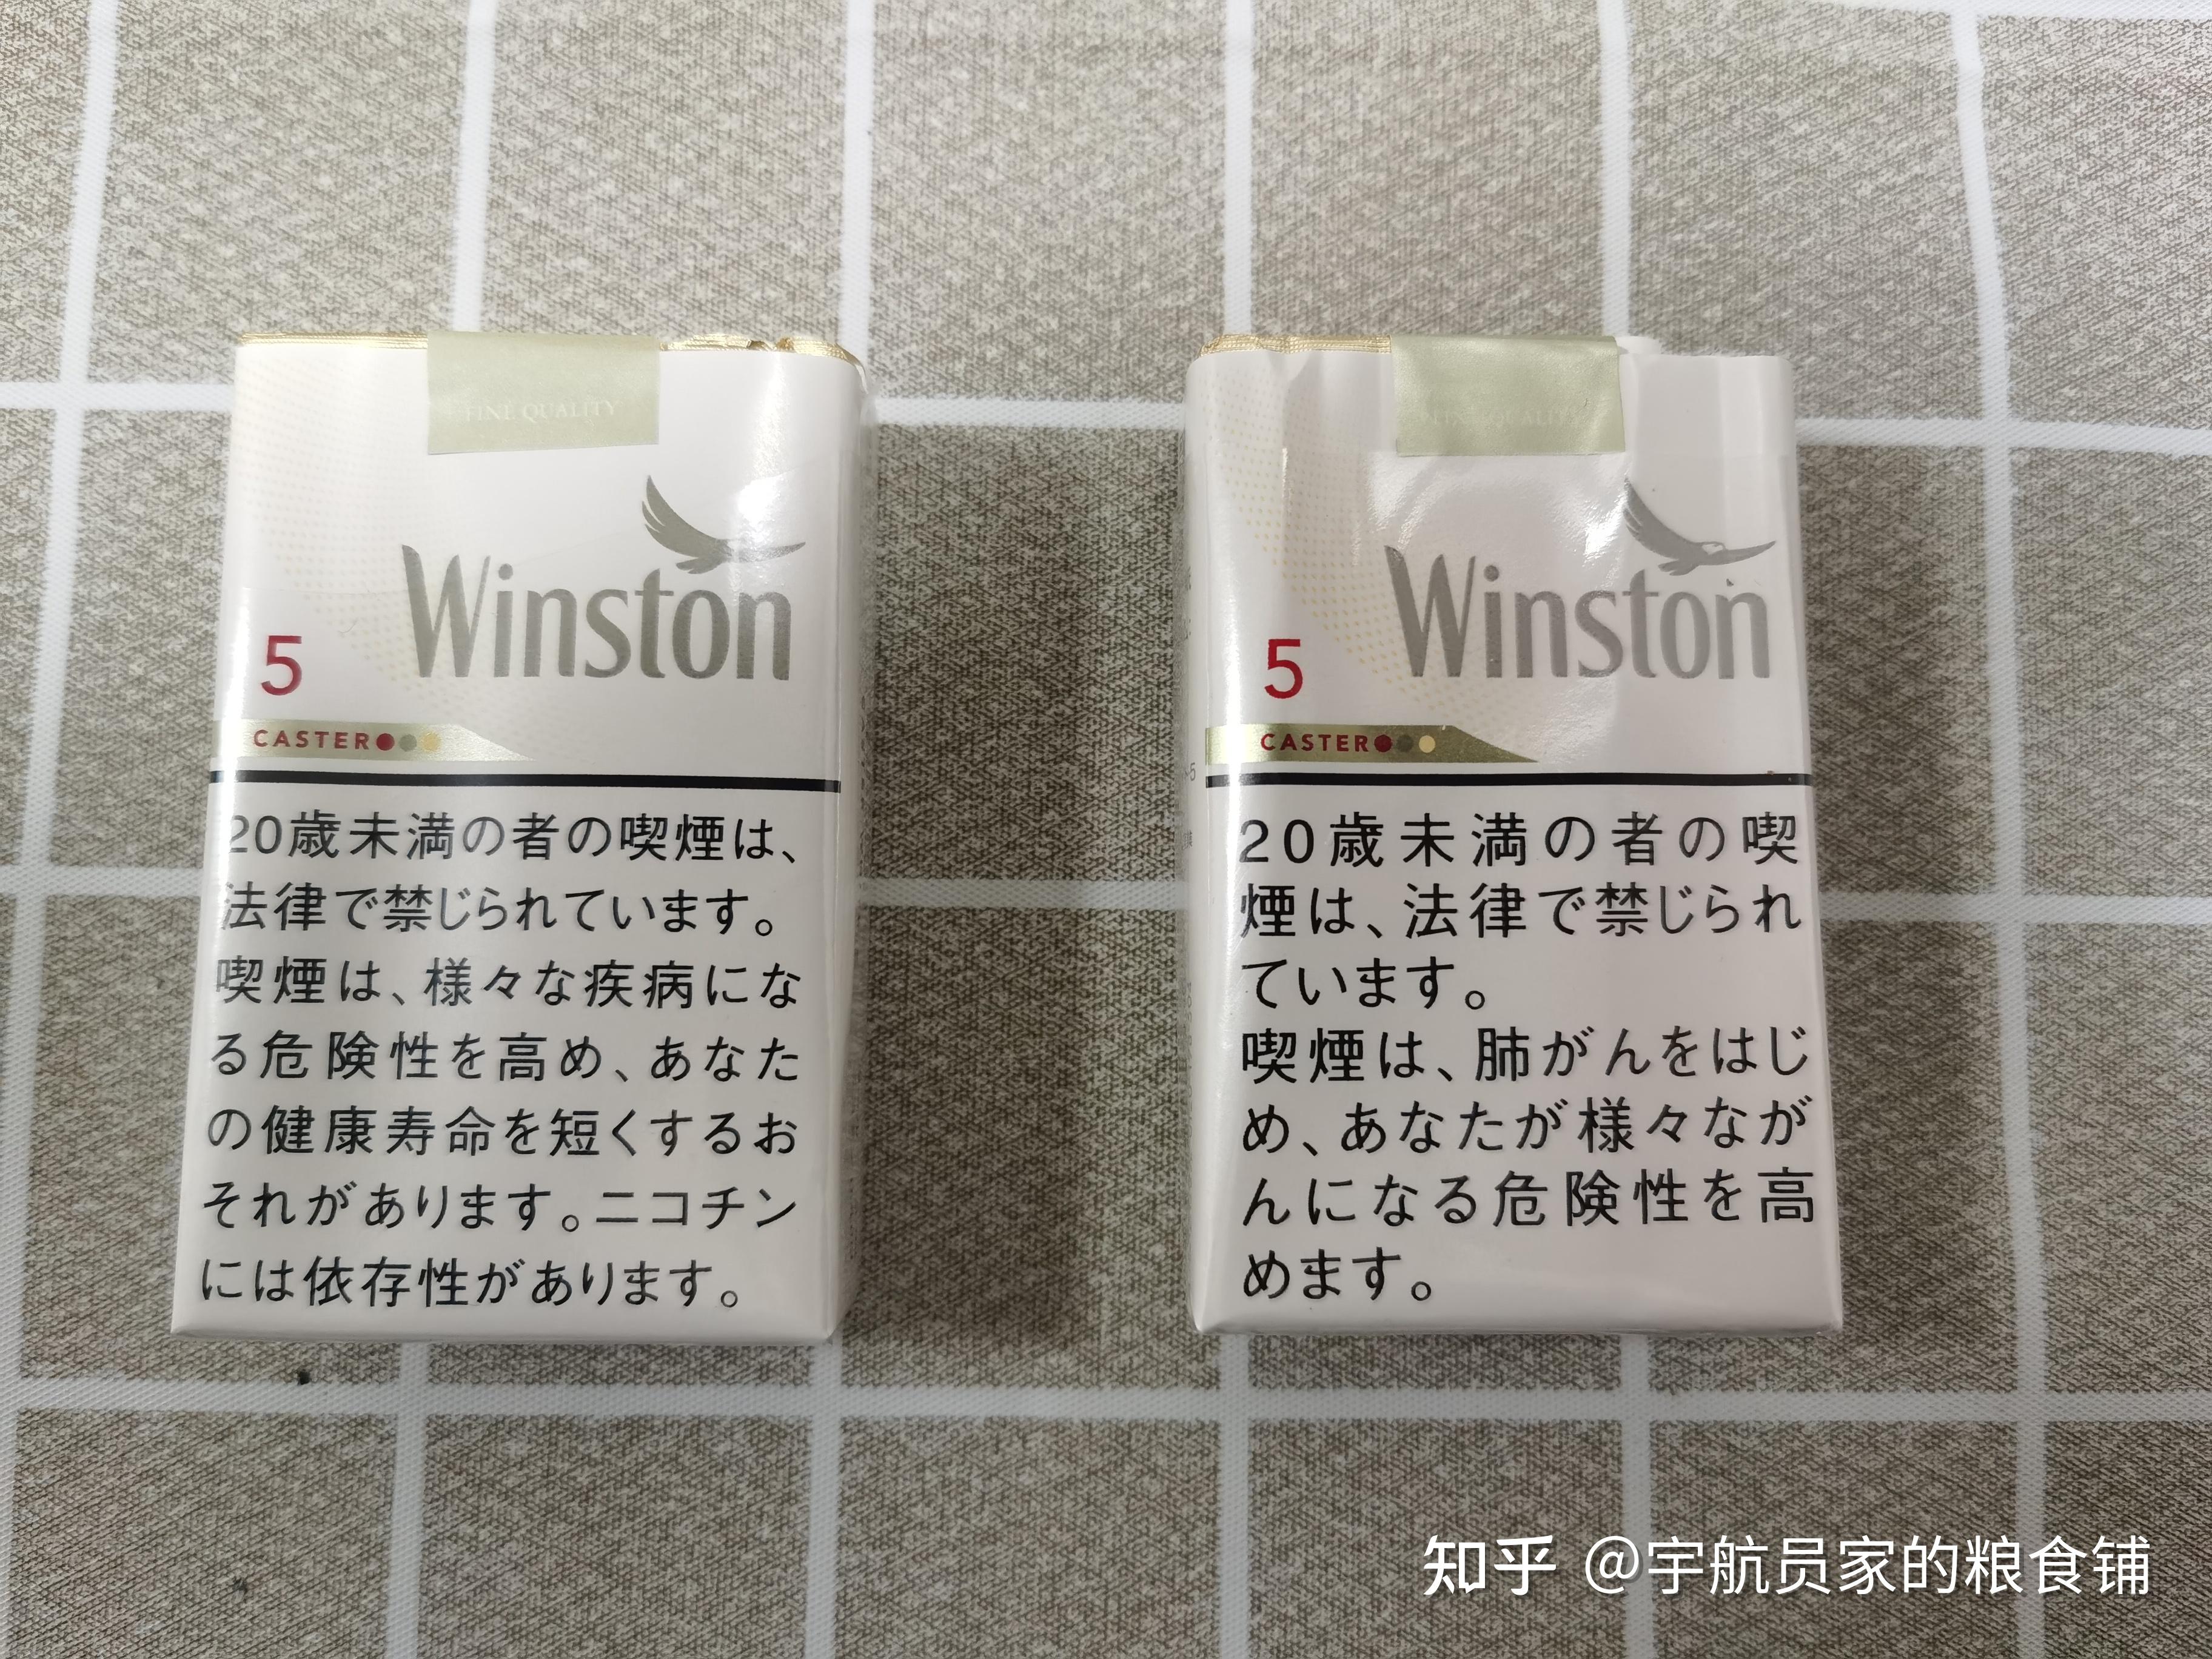 【宇航员测评】品吸日税vs日免云斯顿卡斯特5 mg